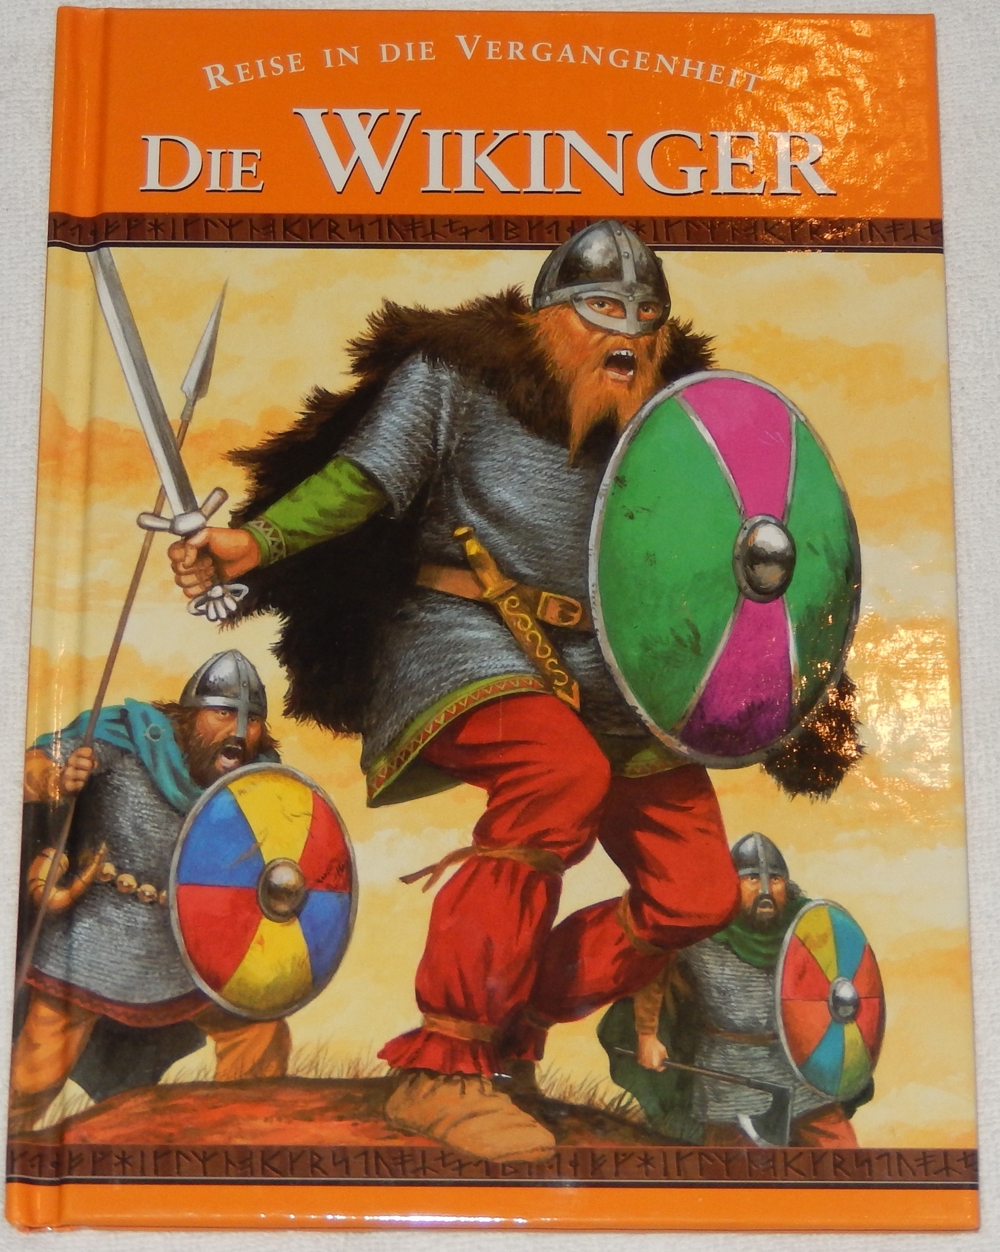 Reise In Die Vergangenheit "Die Wikinger"